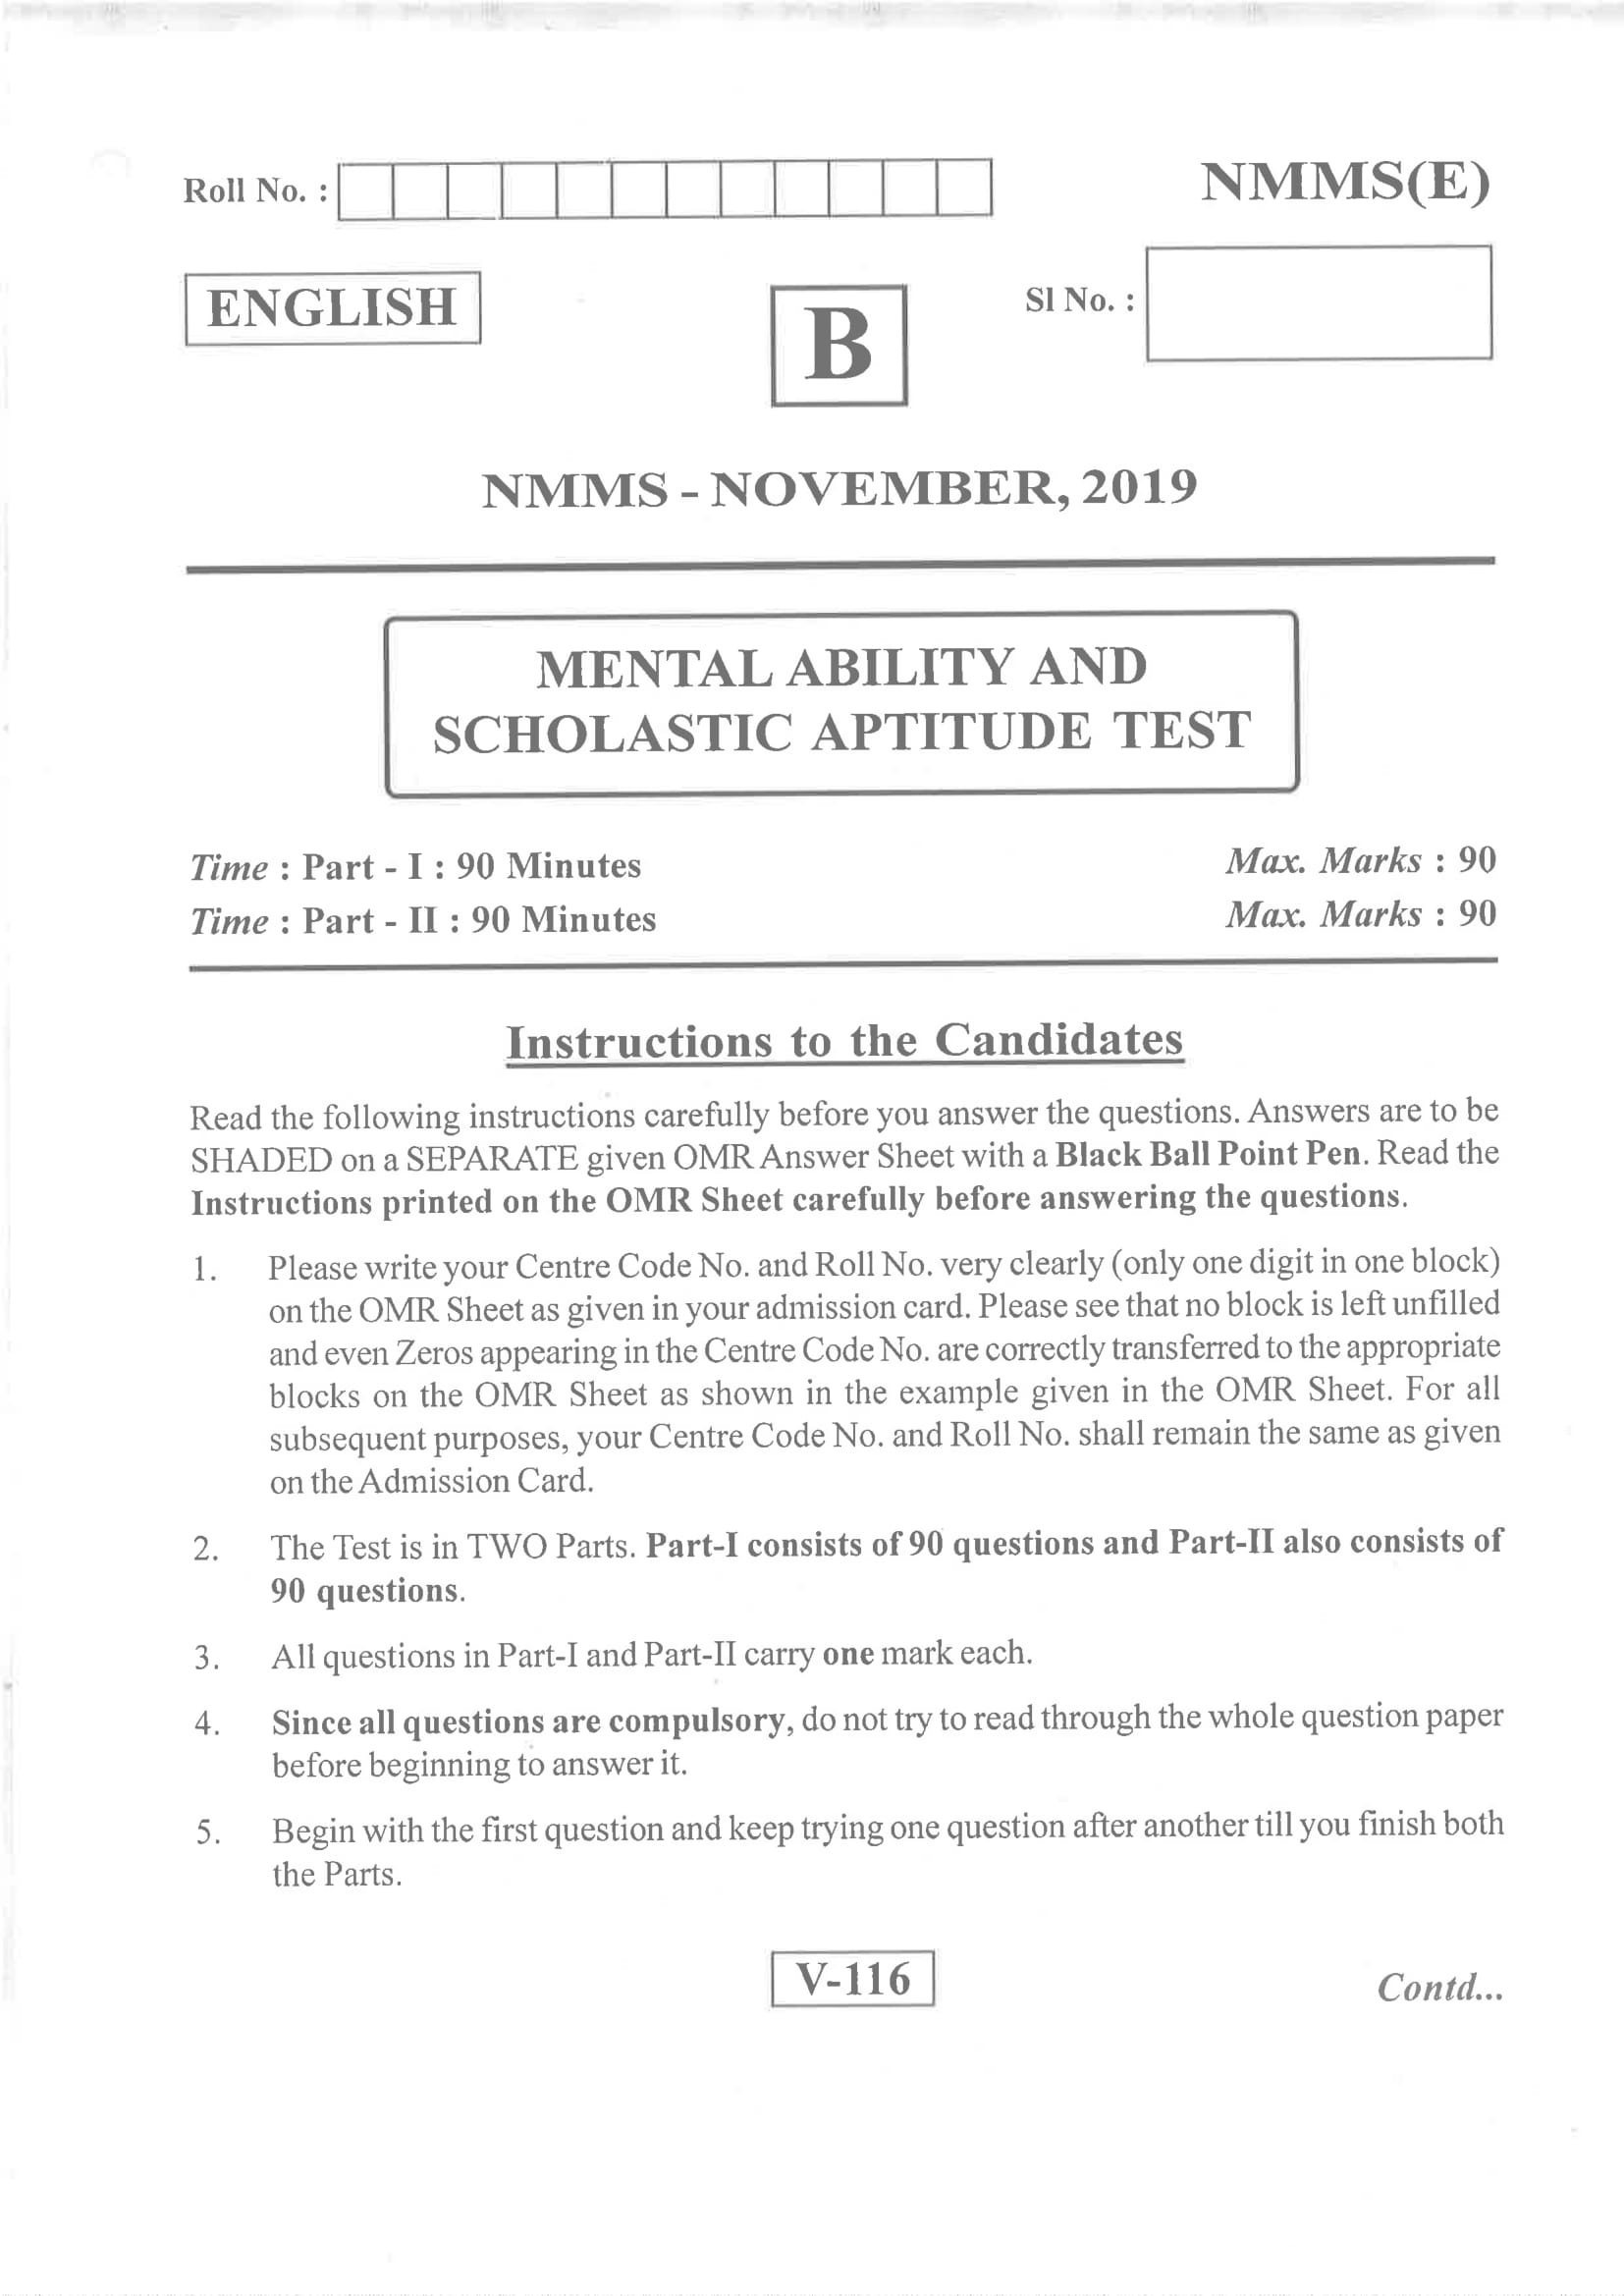 Andhra Pradesh NMMS Nov 2019 Question Paper Set B English - Page 1